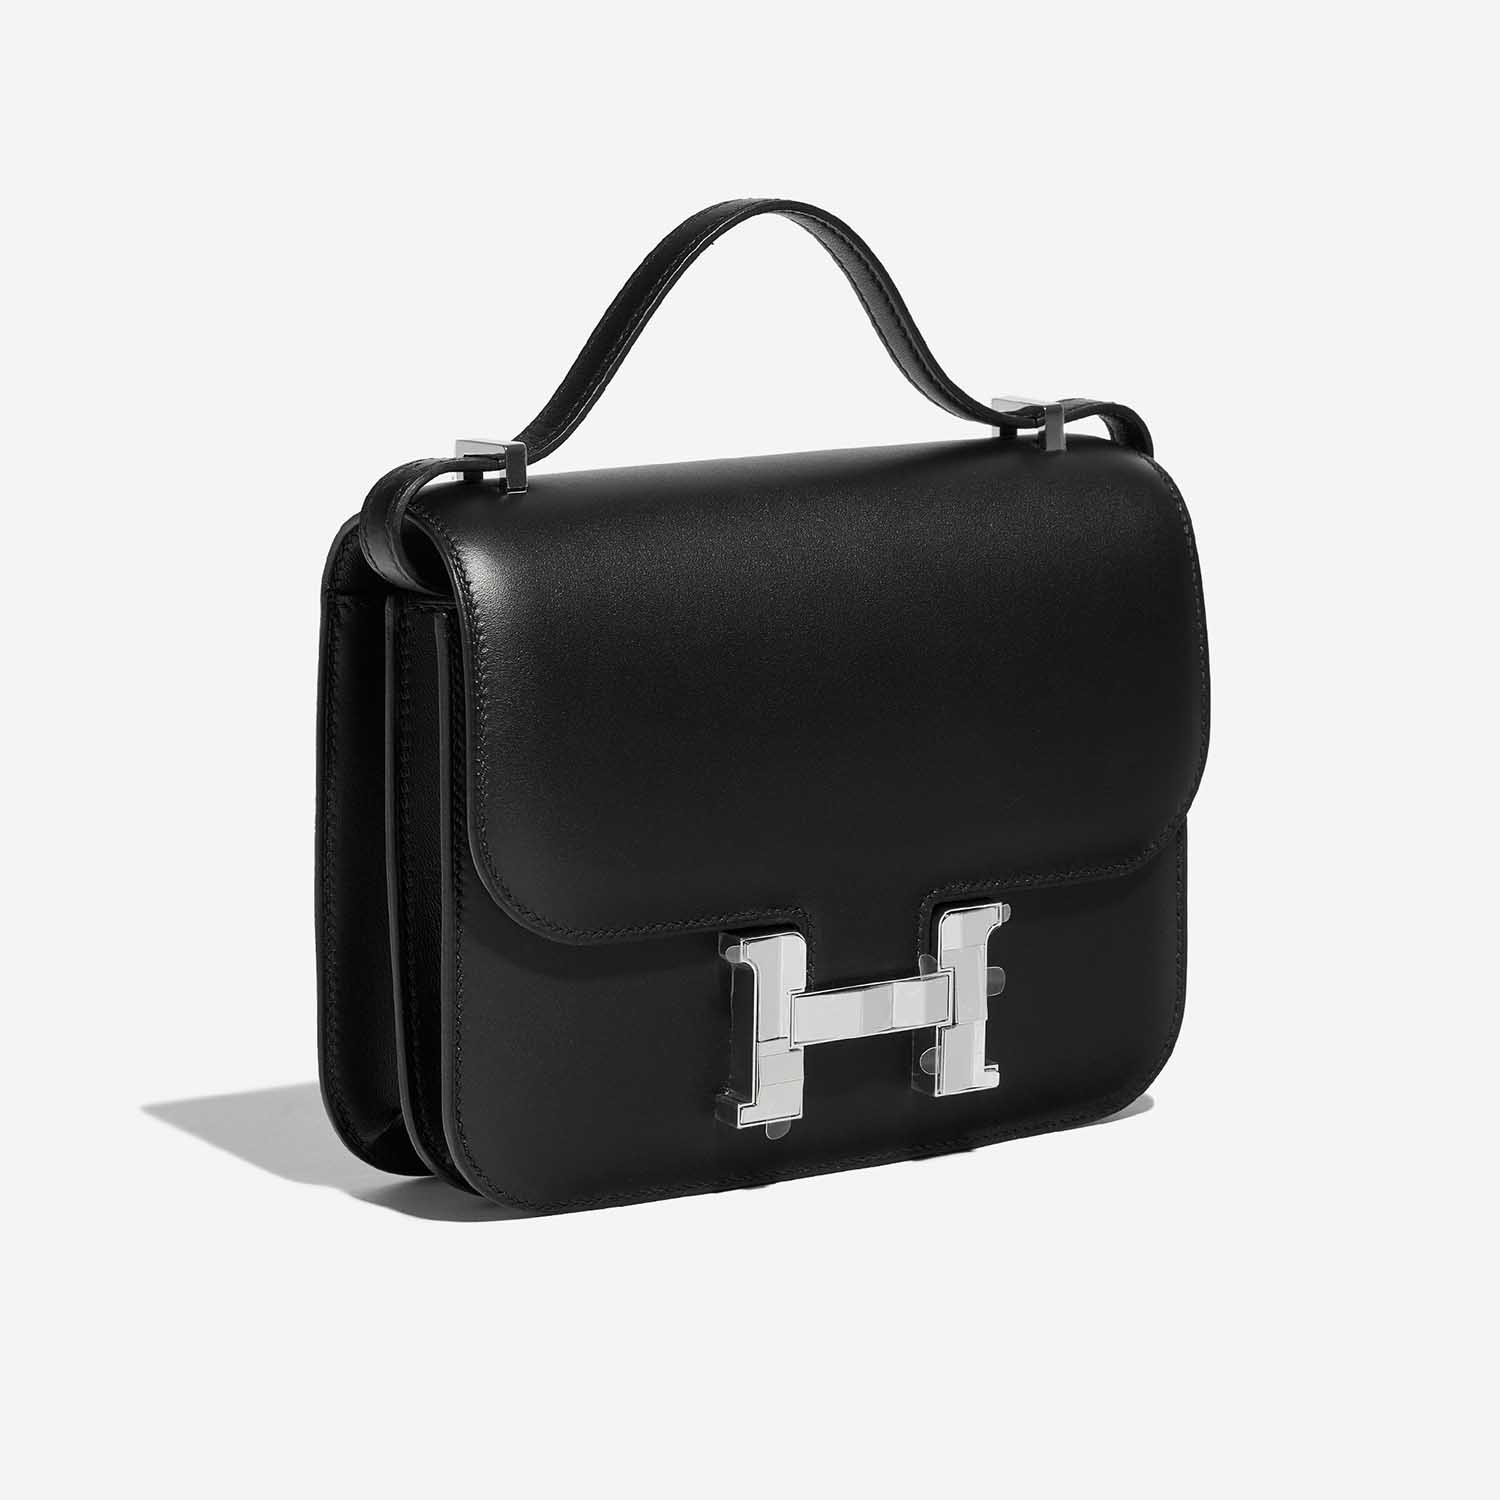 Hermès Constance 18 Schwarz Side Front | Verkaufen Sie Ihre Designer-Tasche auf Saclab.com